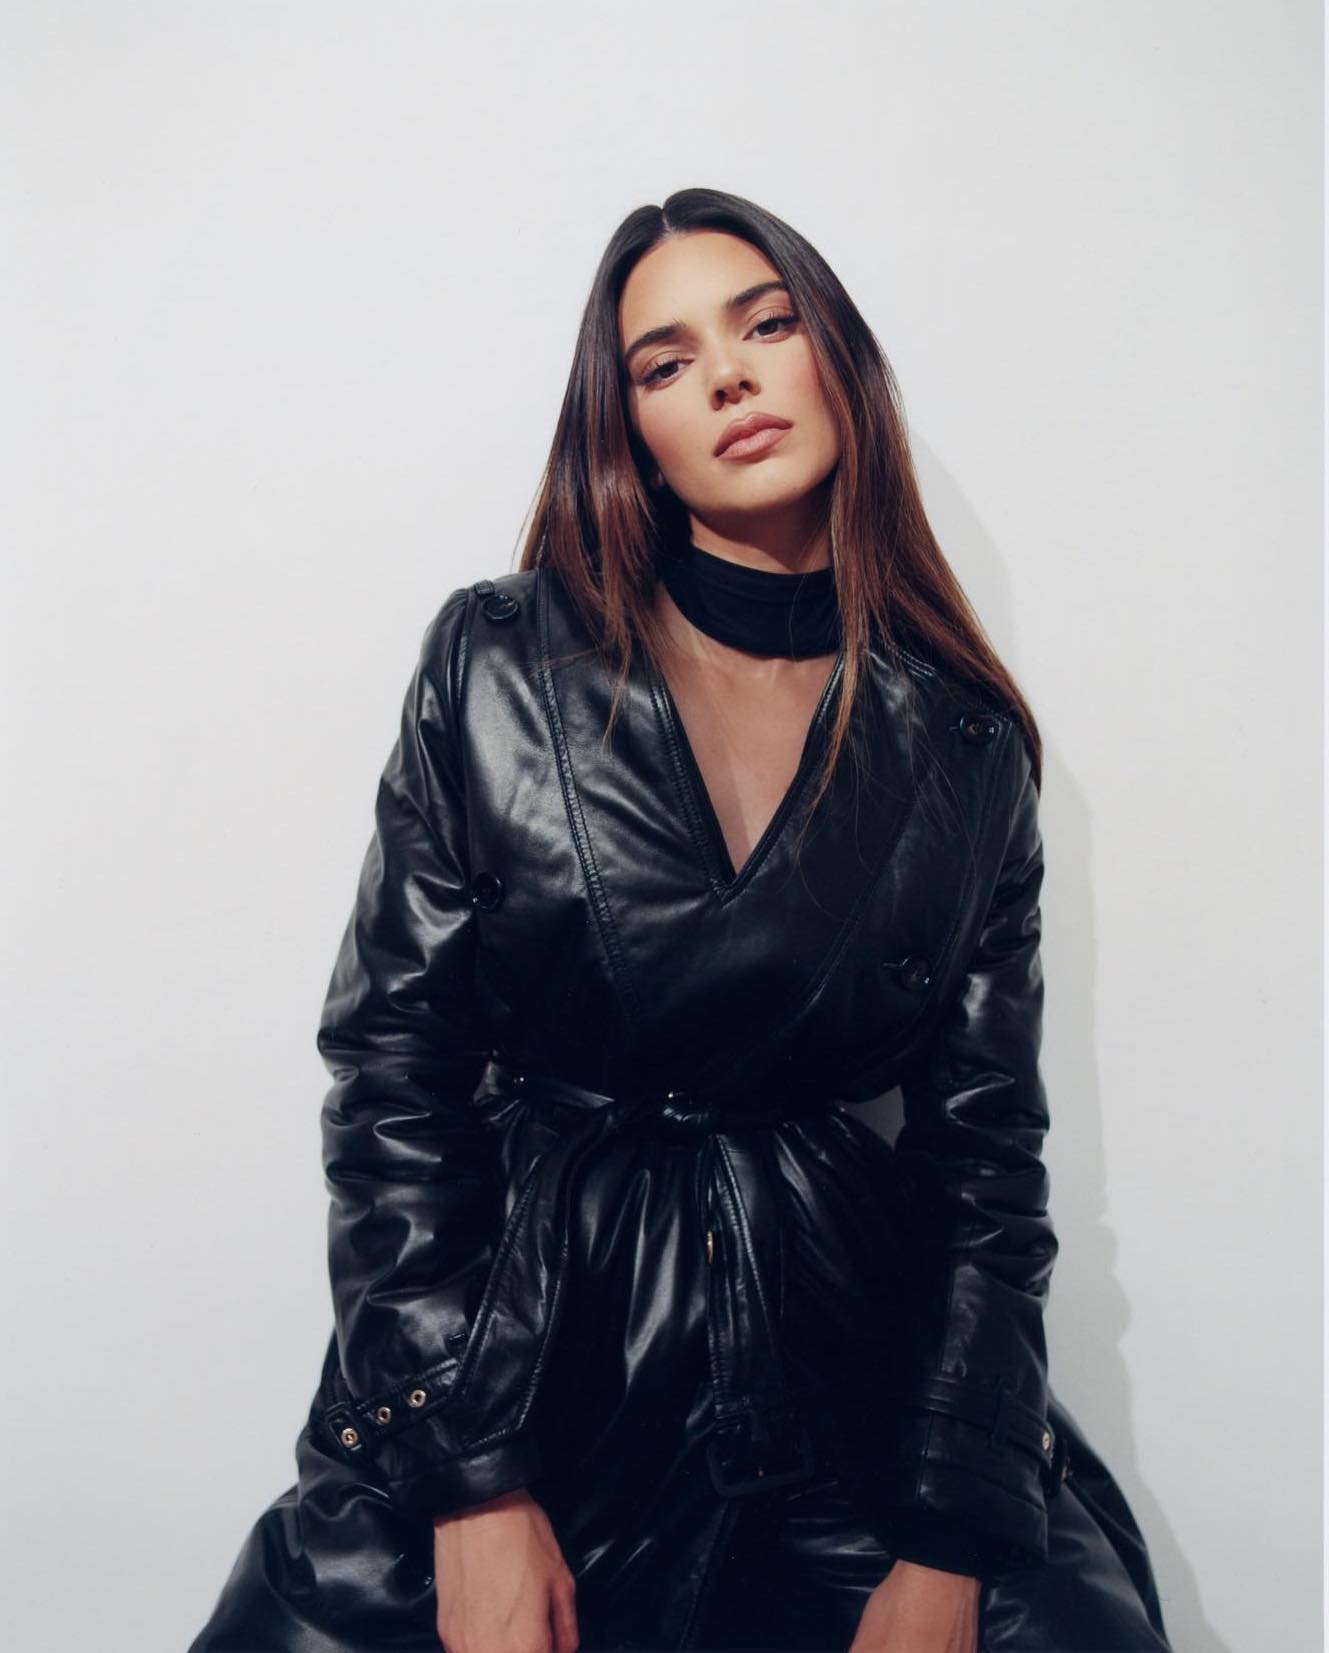 Kendall Jenner Pics